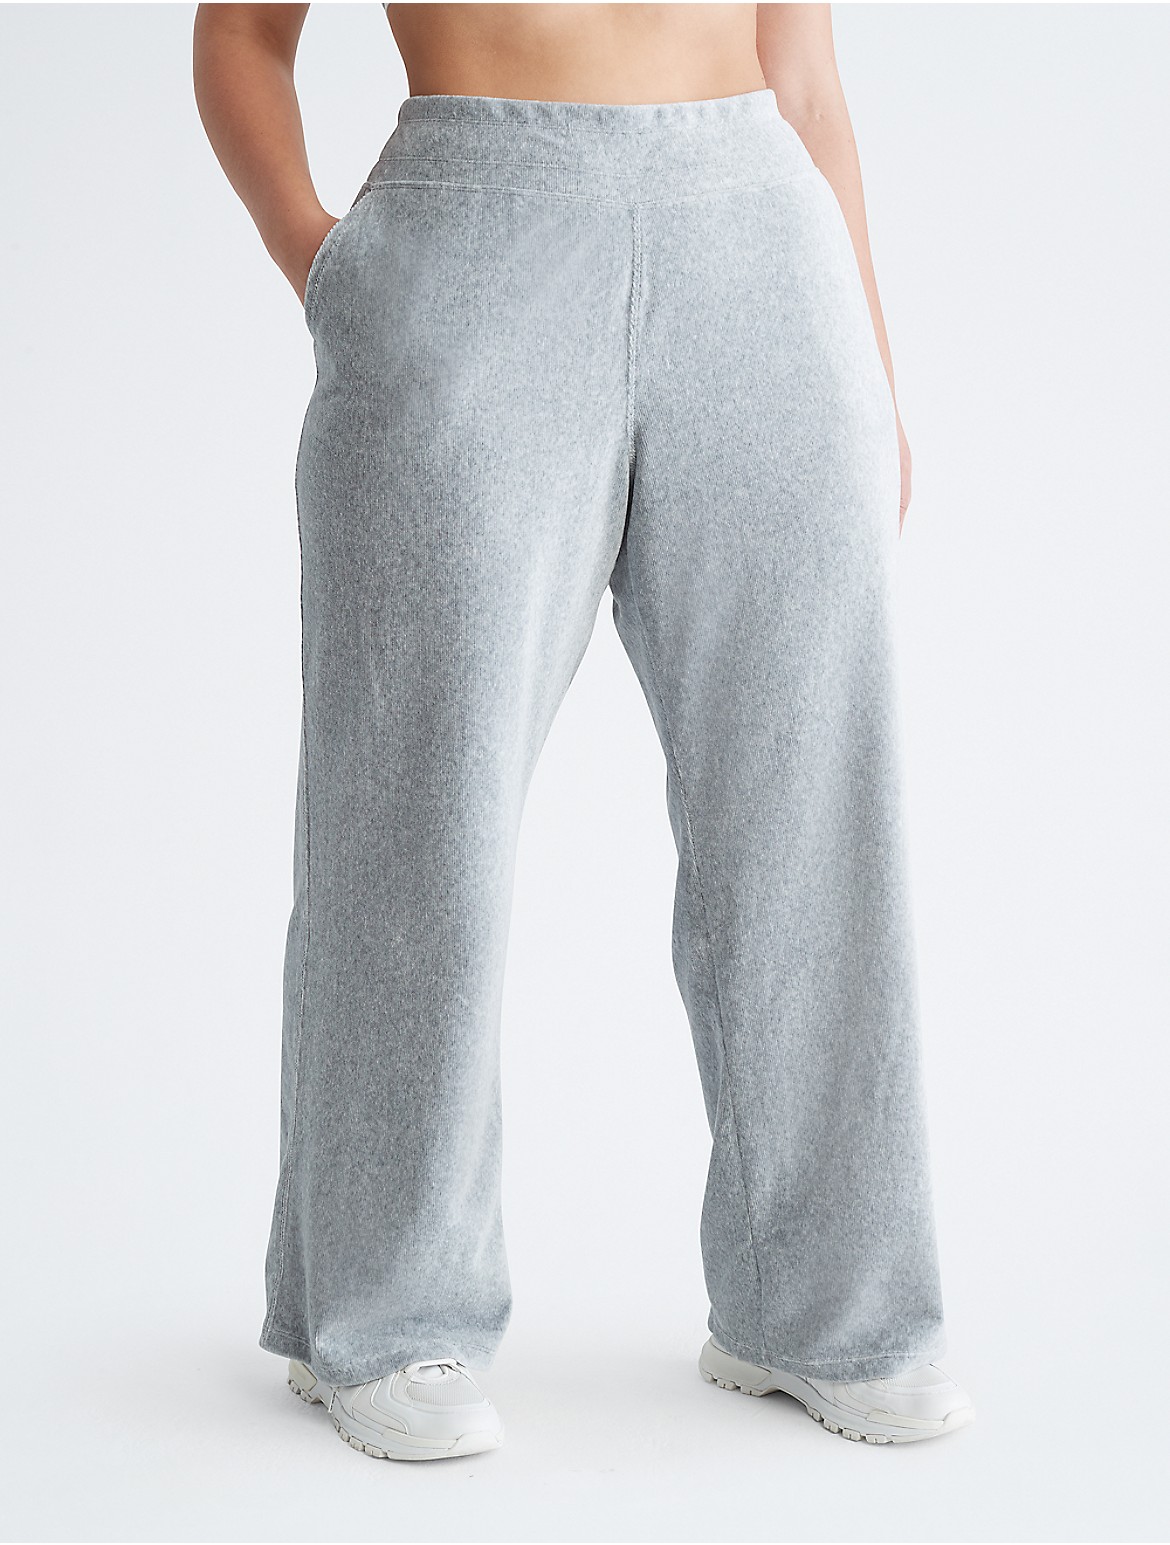 Calvin Klein Women's Plus Size Performance Wide Leg Pants - Grey - 3X